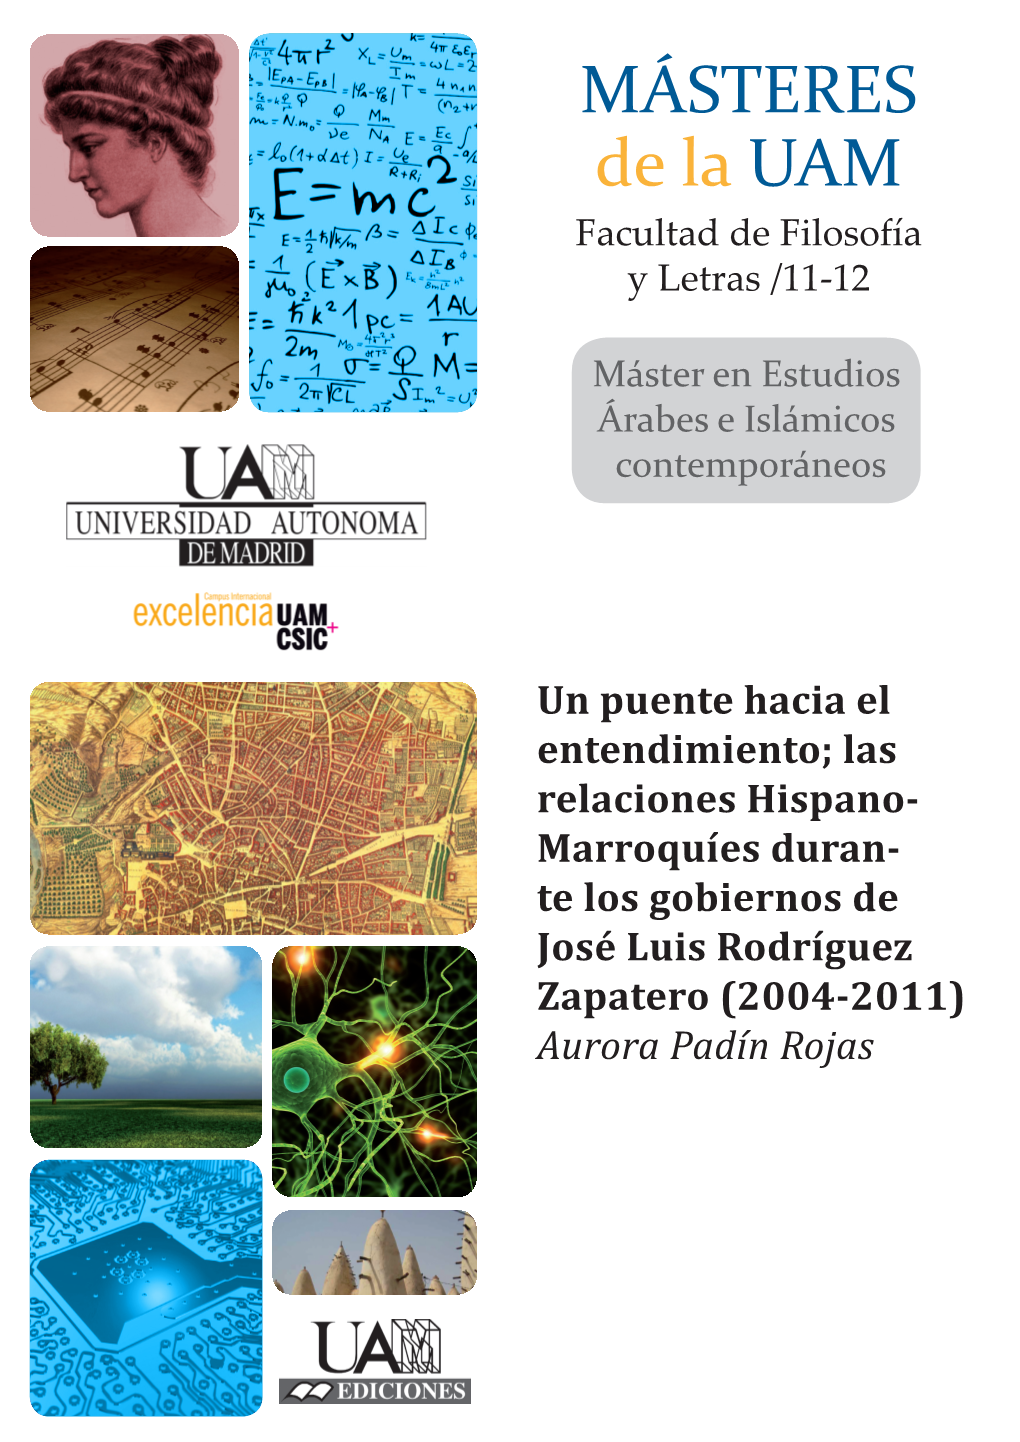 MÁSTERES De La UAM Facultad De Filosofía Y Letras /11-12